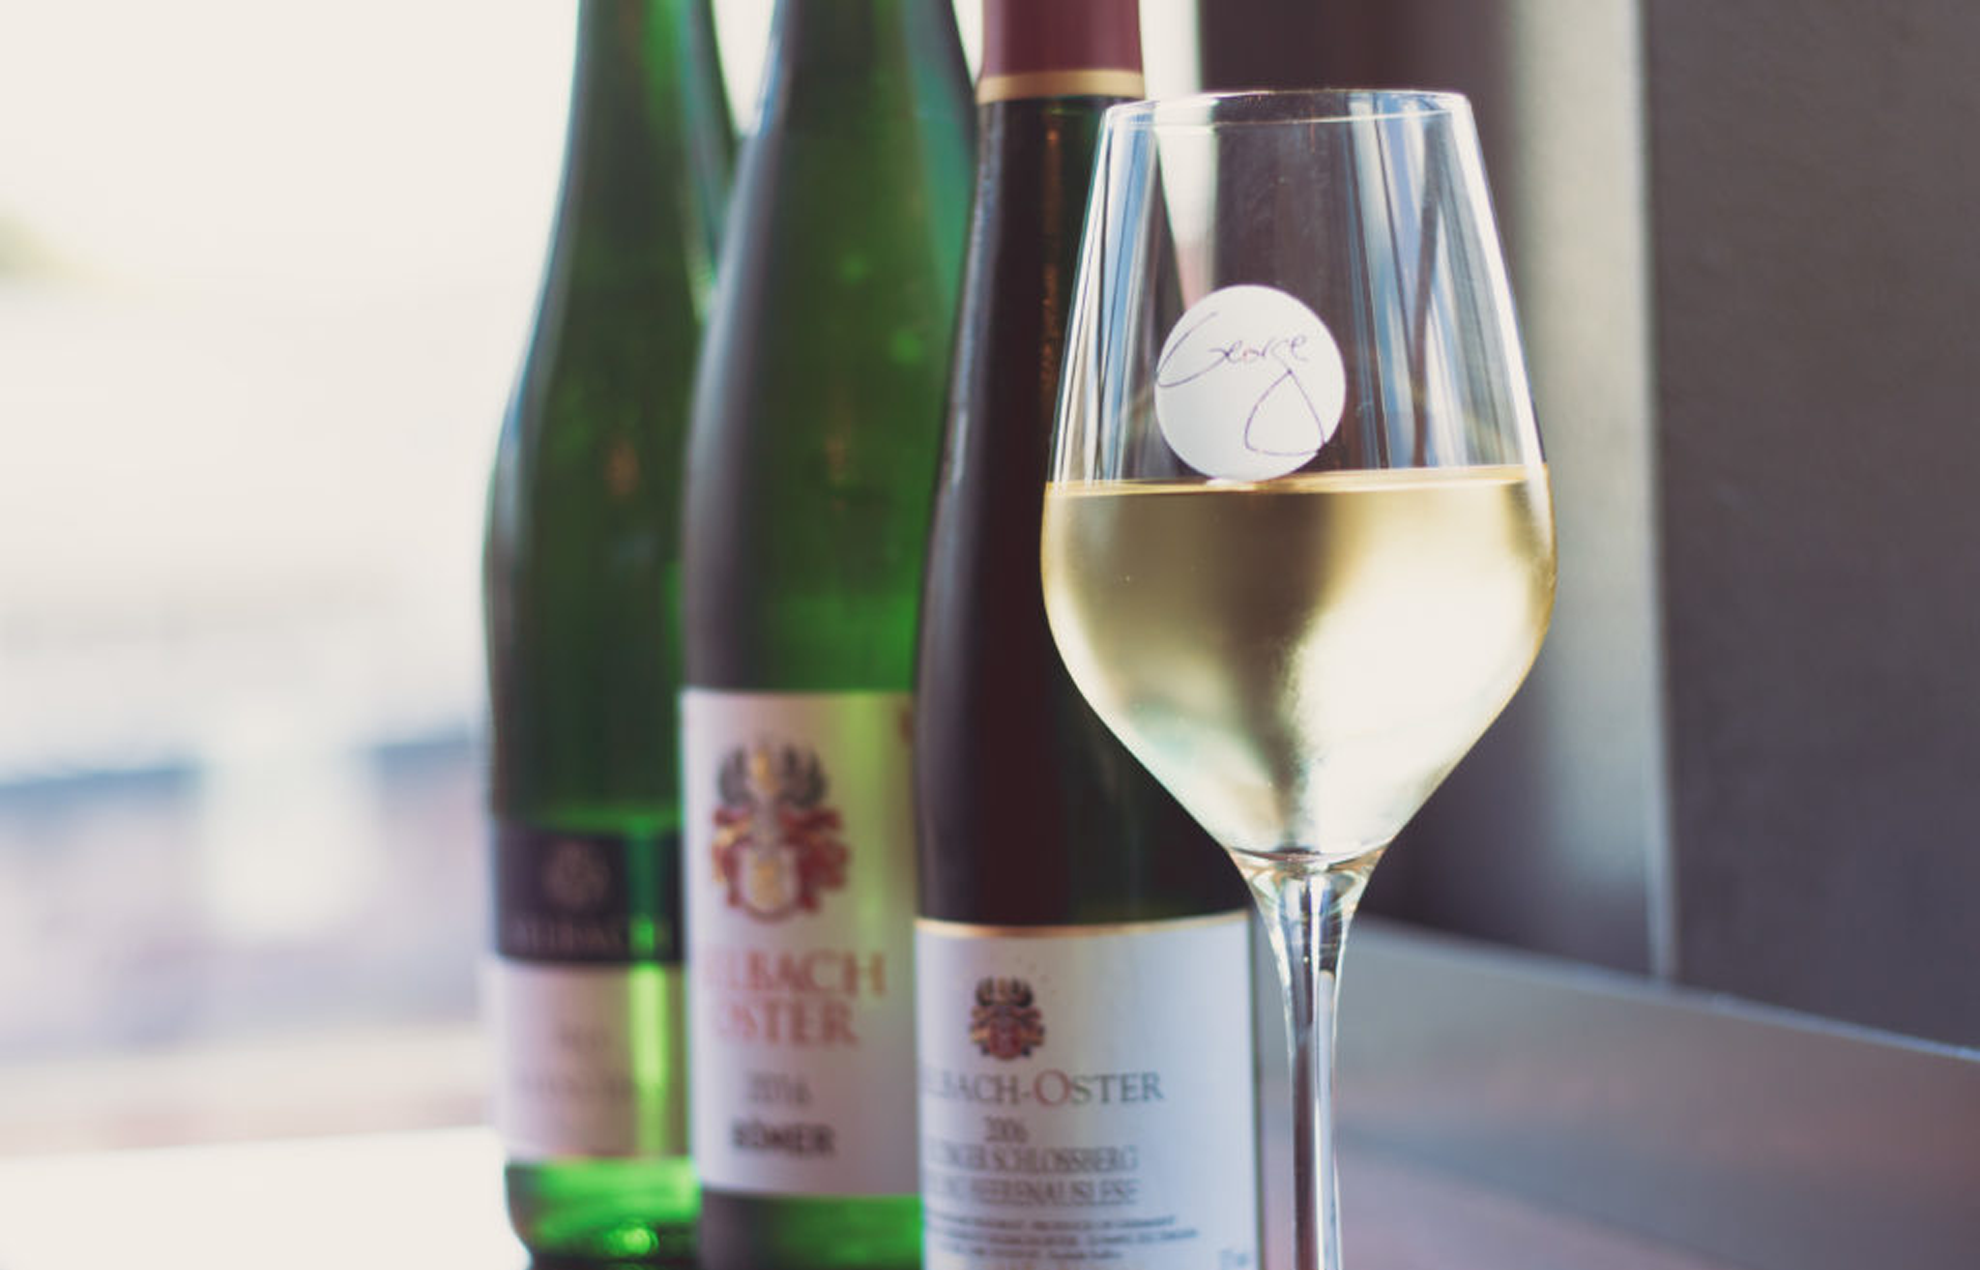 Een wijnglas van George Miliotes, gevuld met witte wijn, met wijnflessen op de achtergrond.
